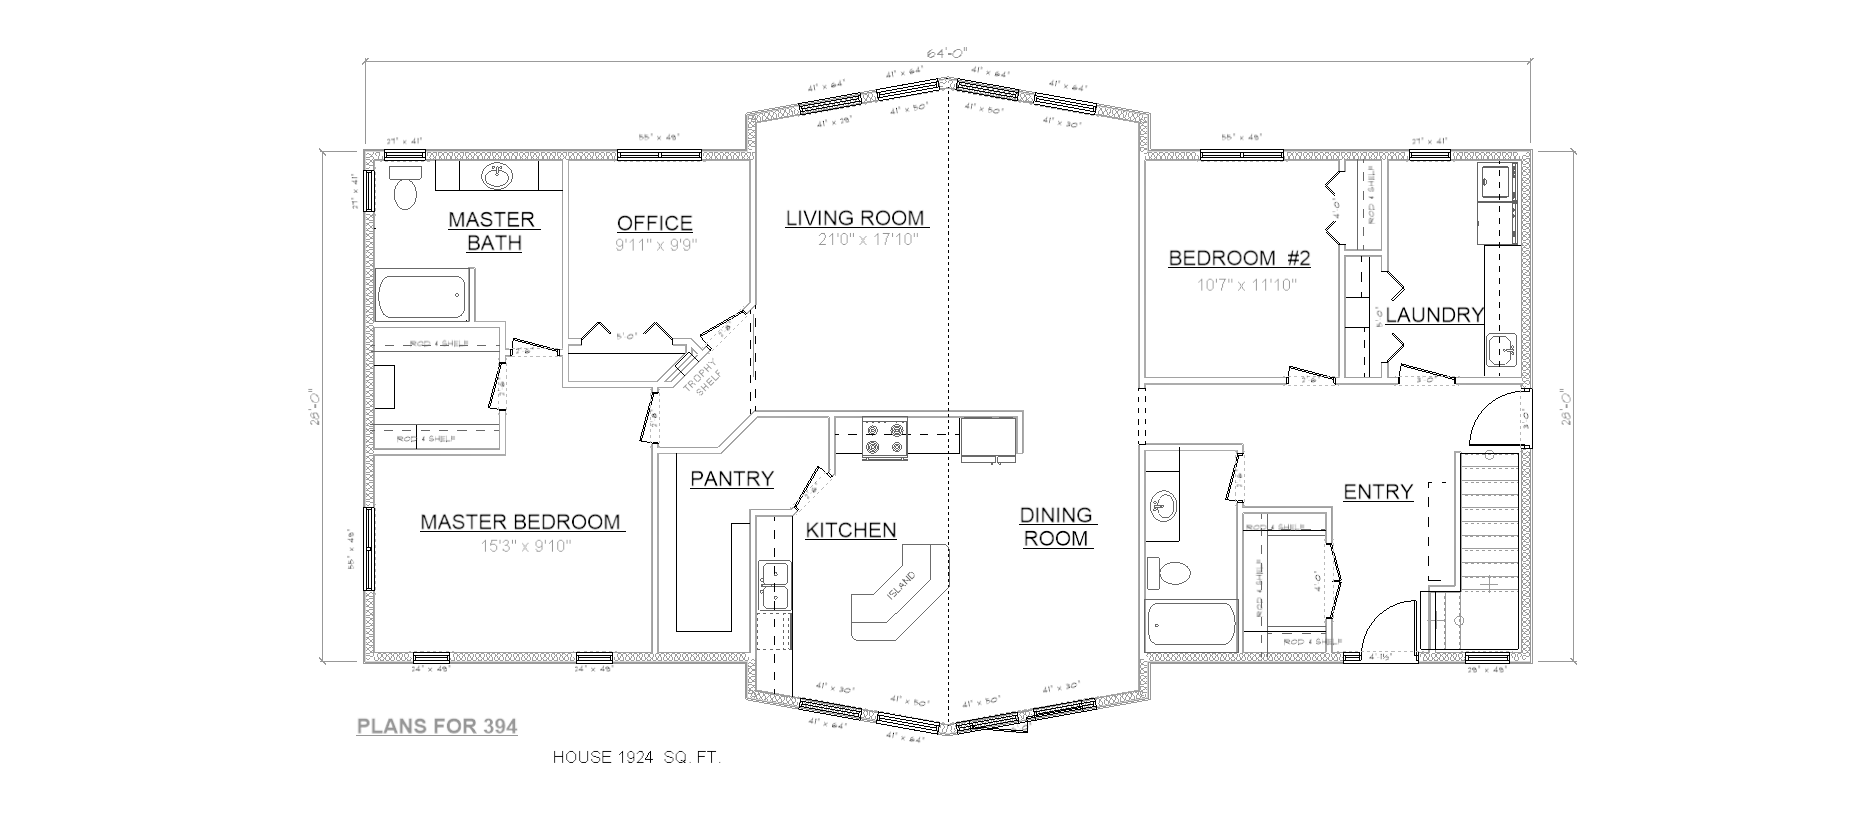 Penner Homes Floor Plan Id: 394